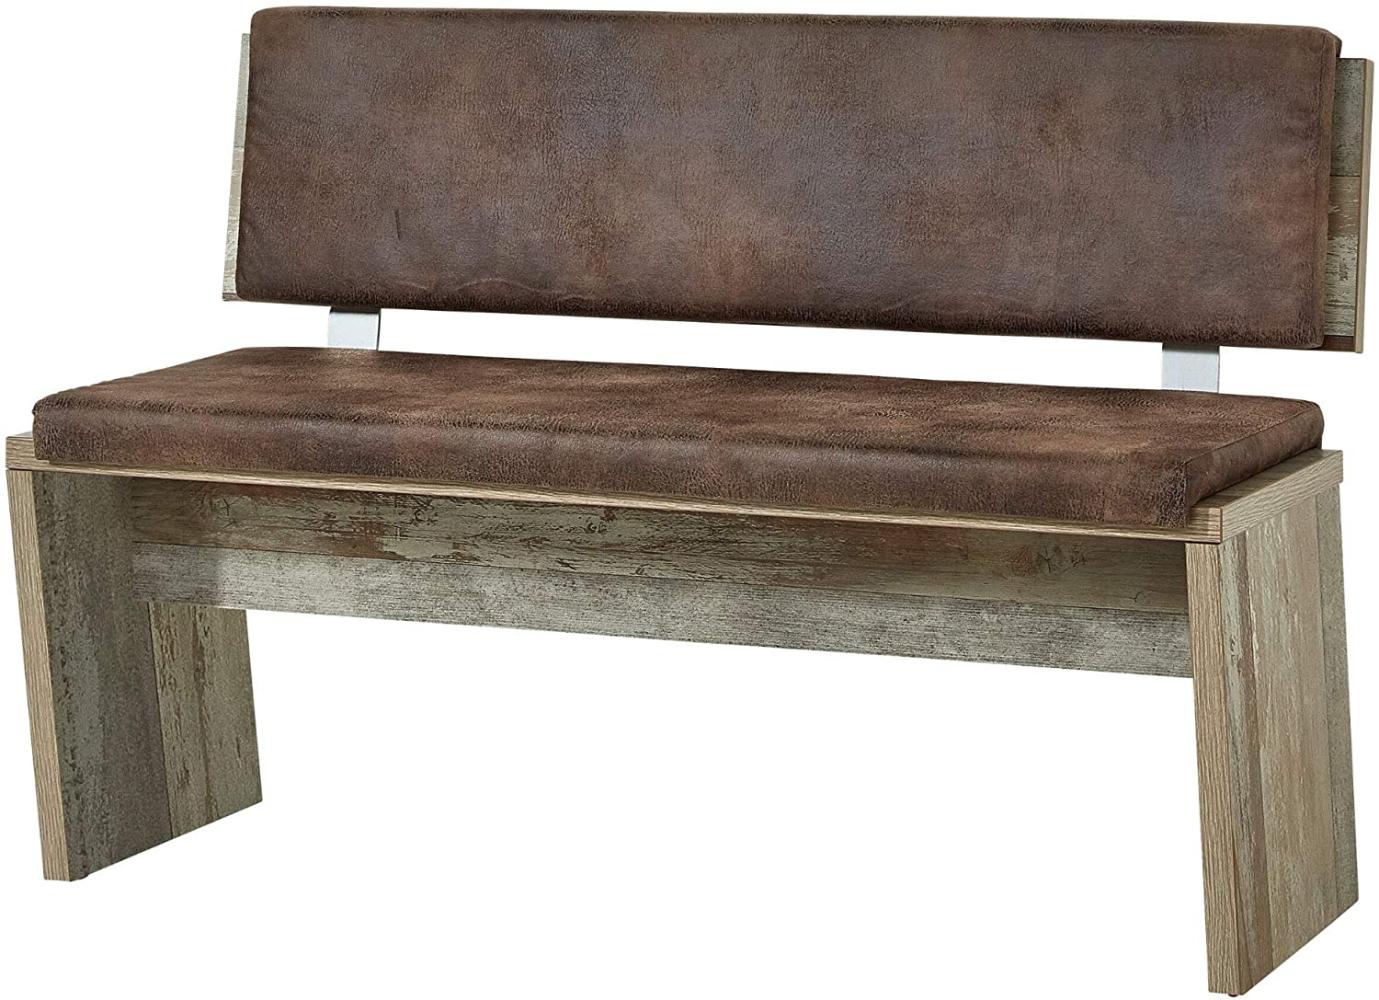 Bonanza Vintage Sitzbank in Driftwood Optik - bequeme Retro Sitzbank mit Lehne für Ihr Wohn- & Esszimmer - 126 x 86 x 55 cm (B/H/T) Bild 1